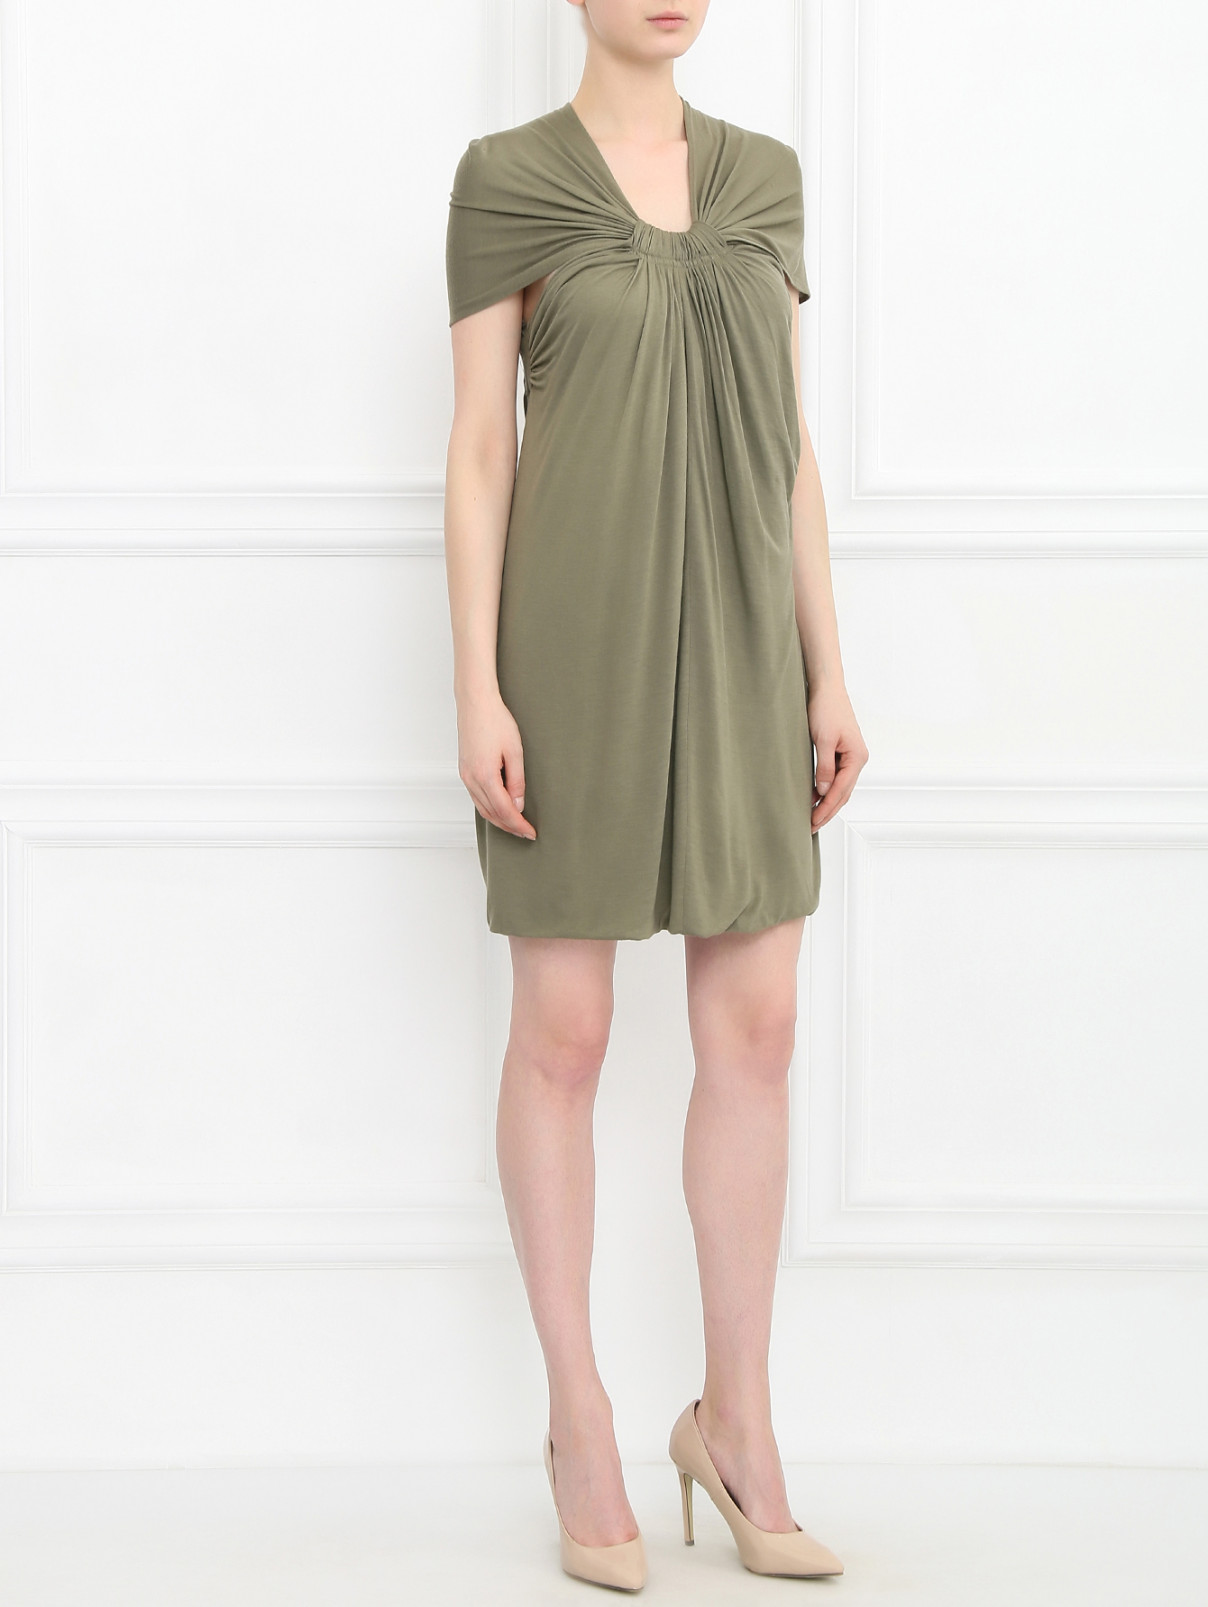 Трикотажное платье с вырезом на спине Cut 25  –  Модель Общий вид  – Цвет:  Зеленый